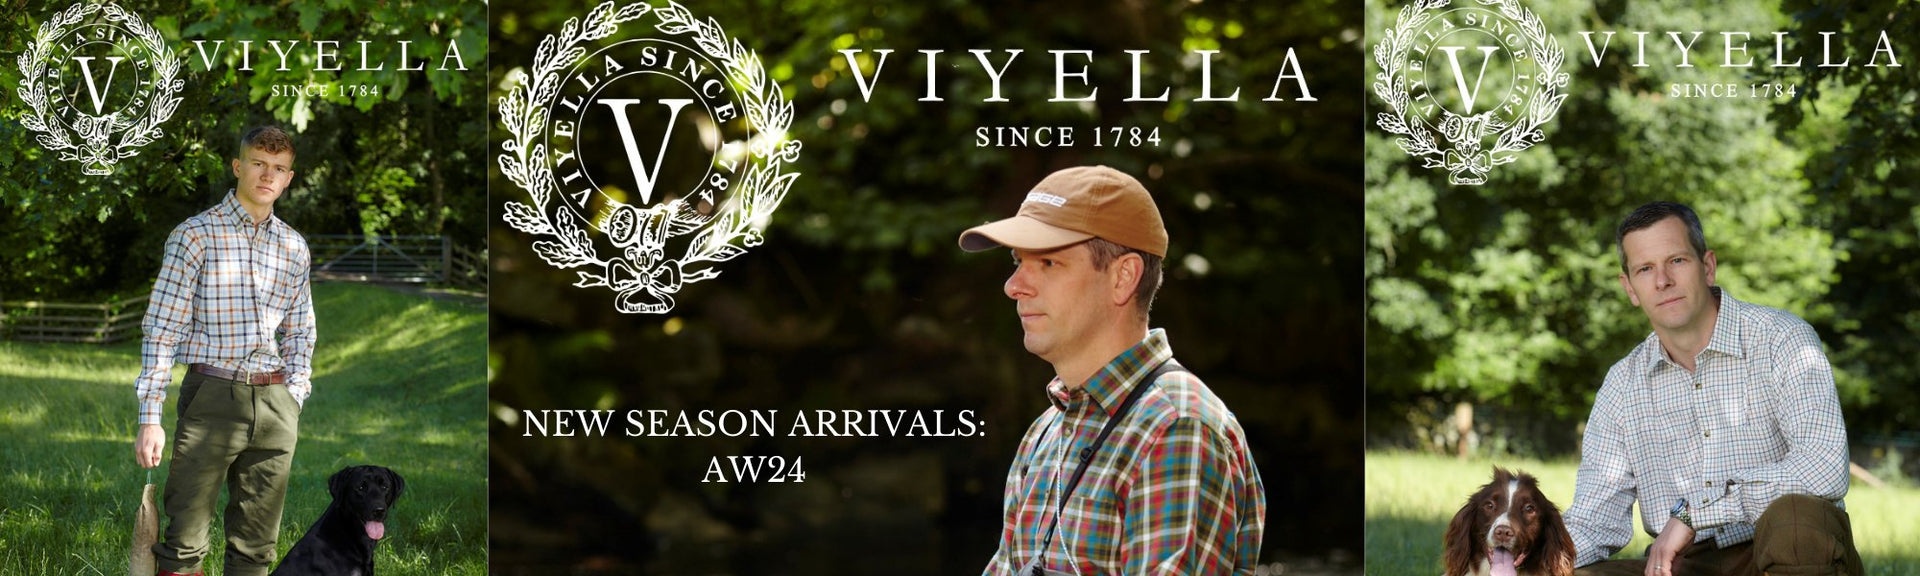 New Arrivals Viyella